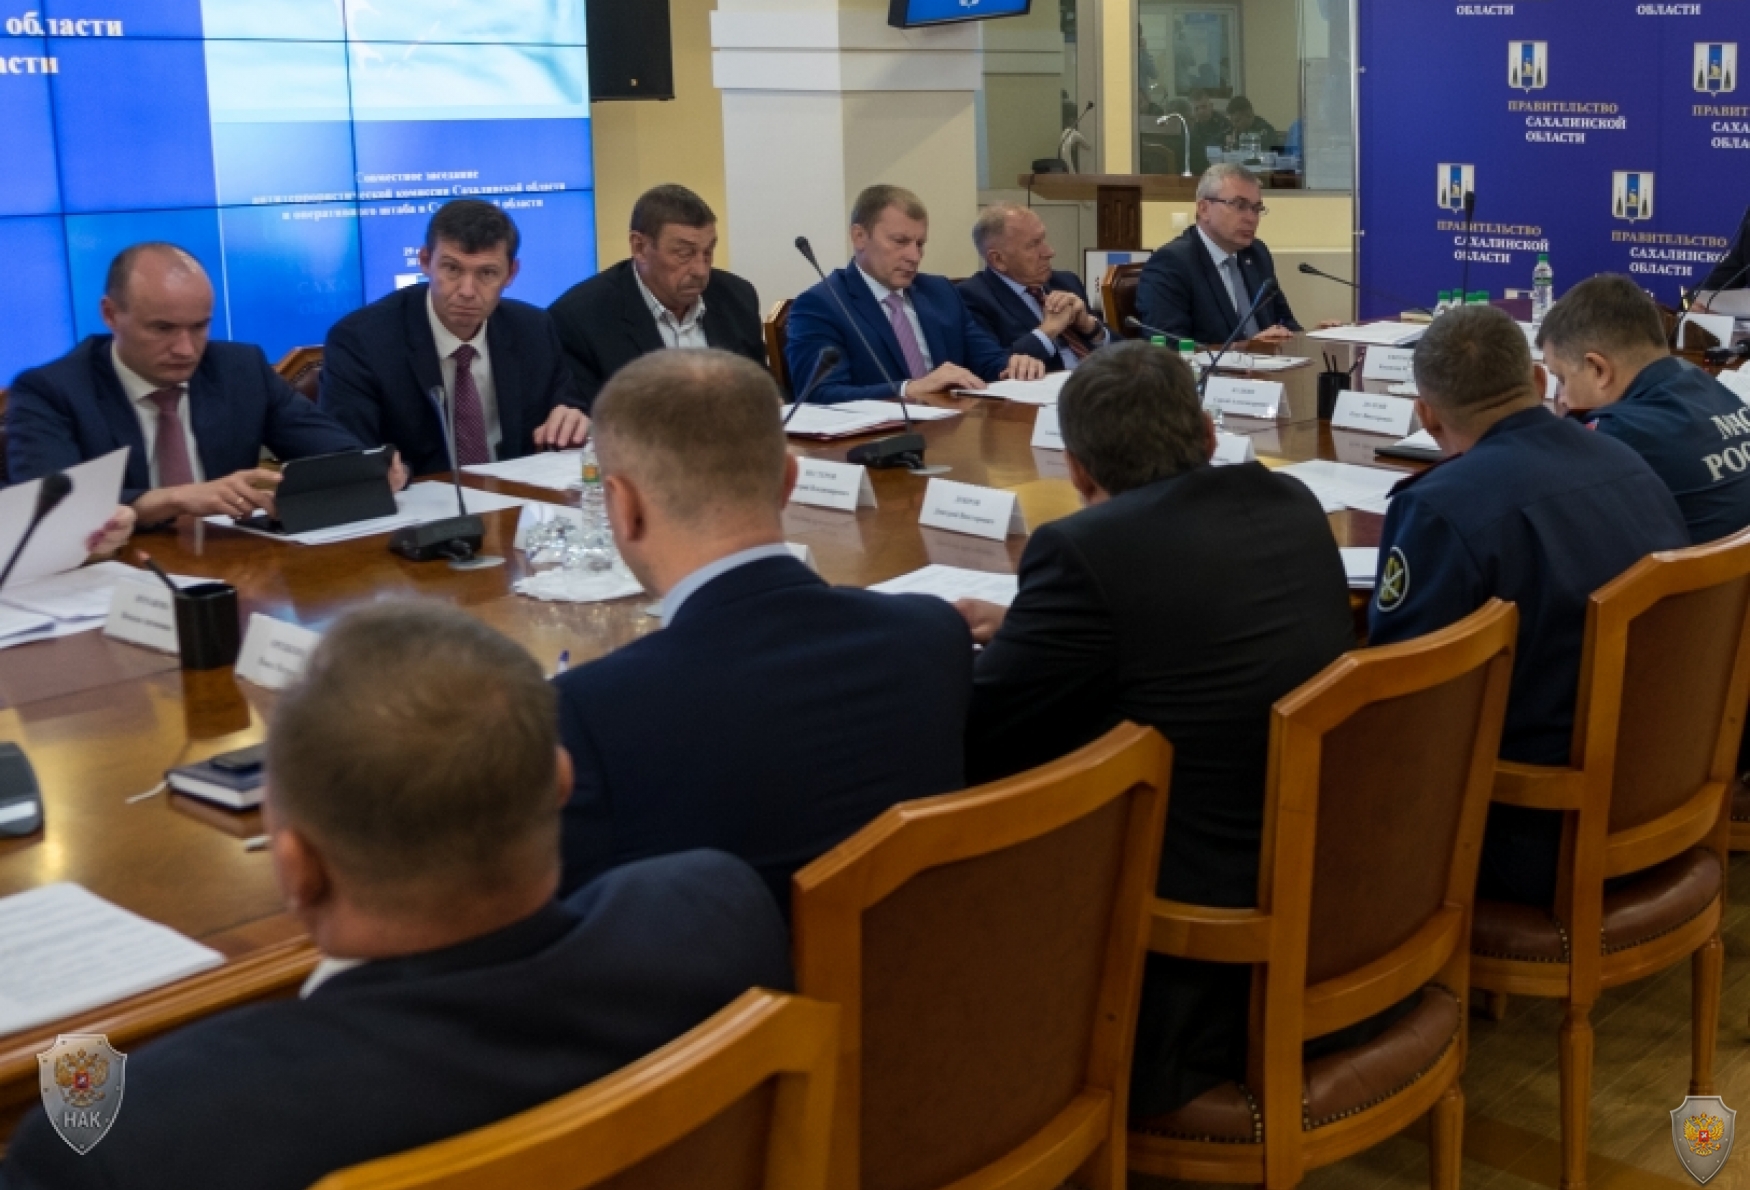 Все школы Сахалинской области к 1 сентября проверены на безопасность и антитеррористическую защищённость